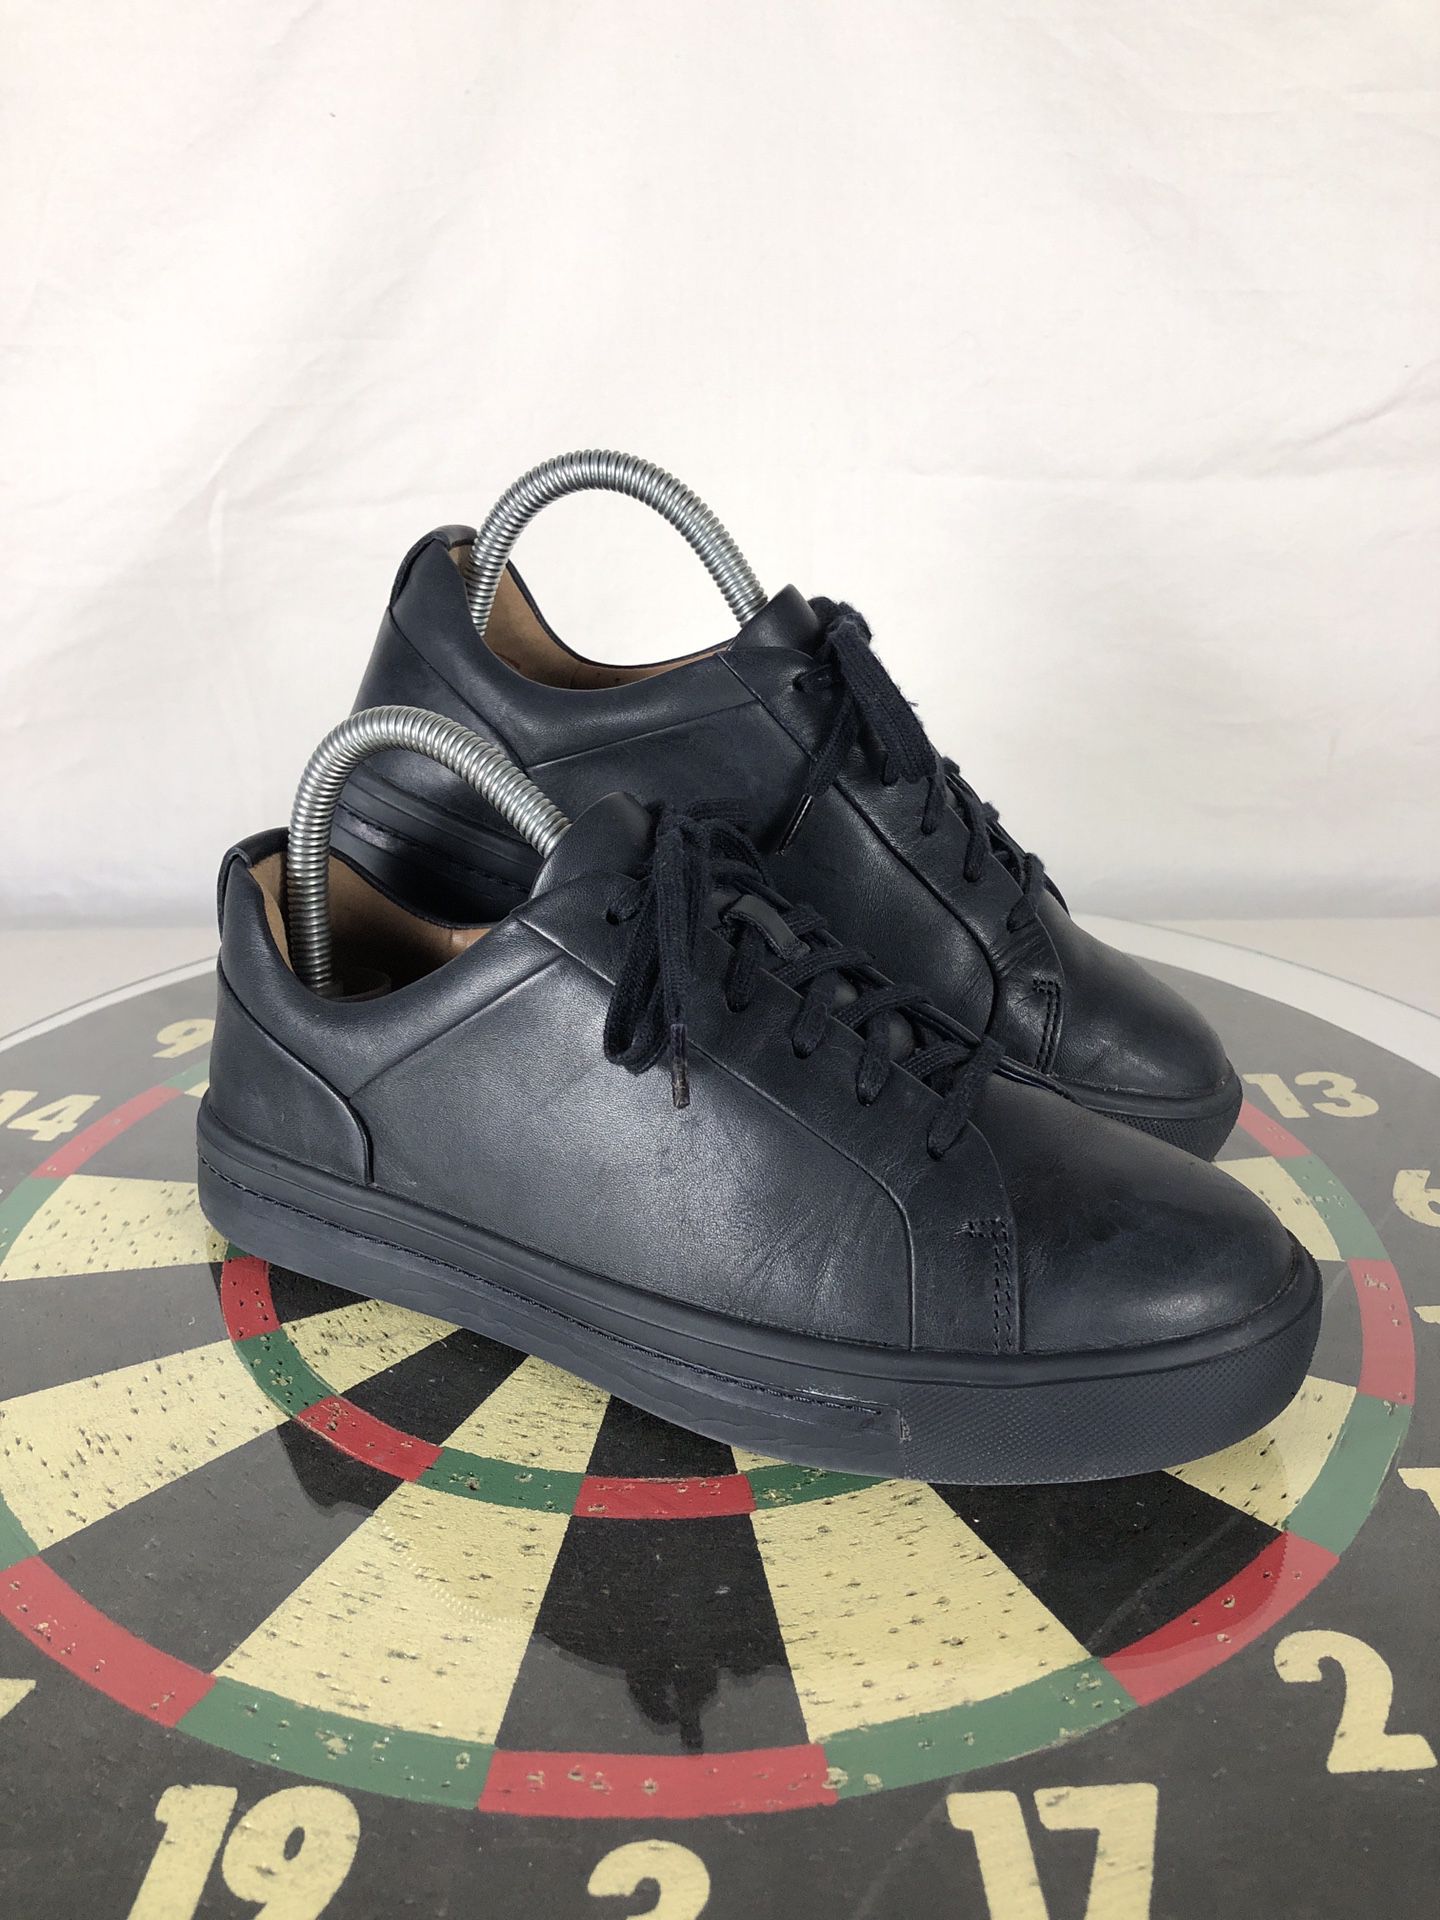 Clarks Artisan Unstructured Black Leather Walking Shoe Sneaker Women 6 for Sale in West Linn, OR - OfferUp